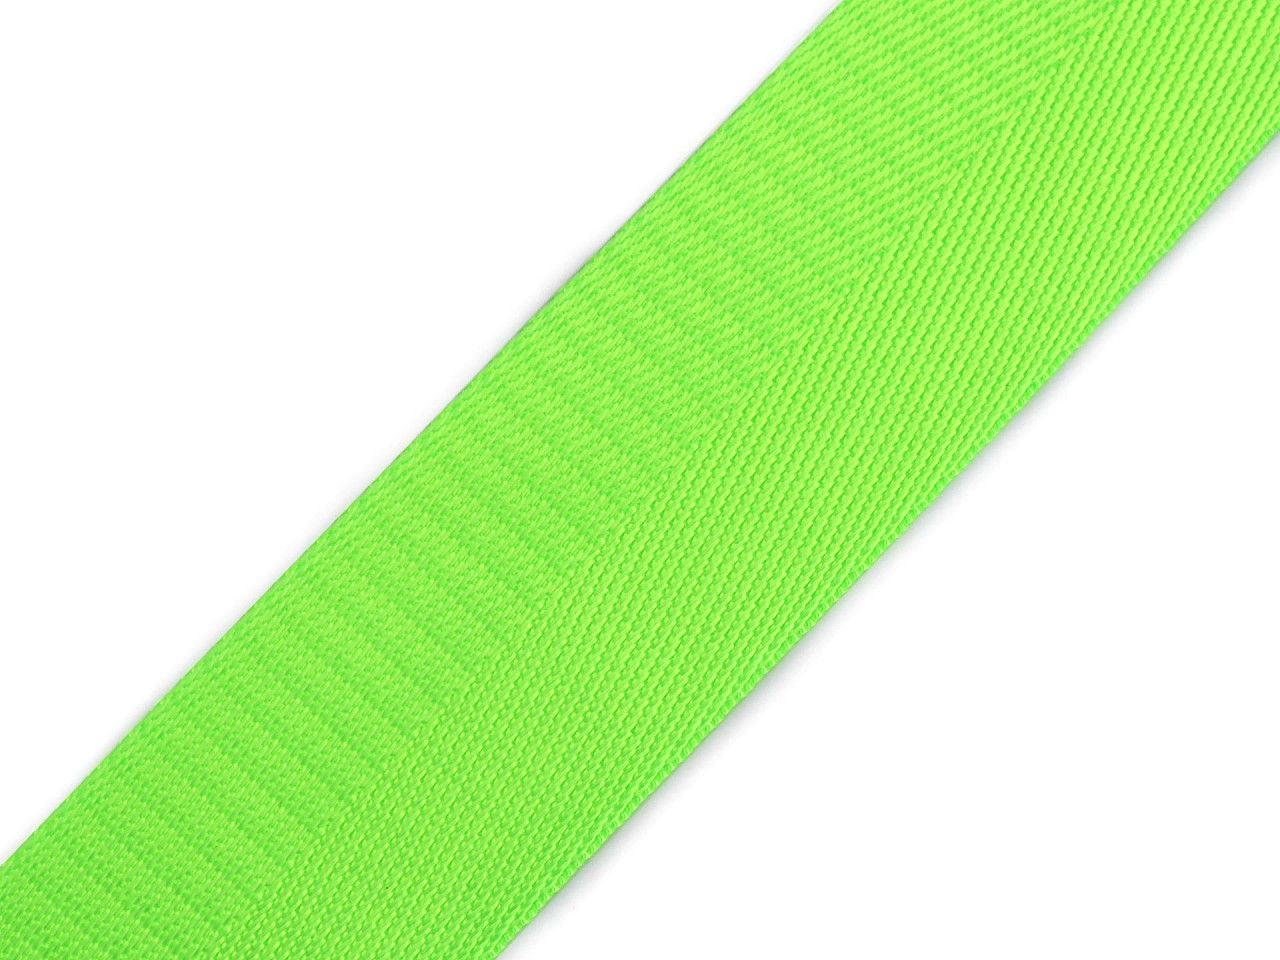 Hladký oboustranný popruh s leskem šíře 38 mm, barva 9 zelená neon